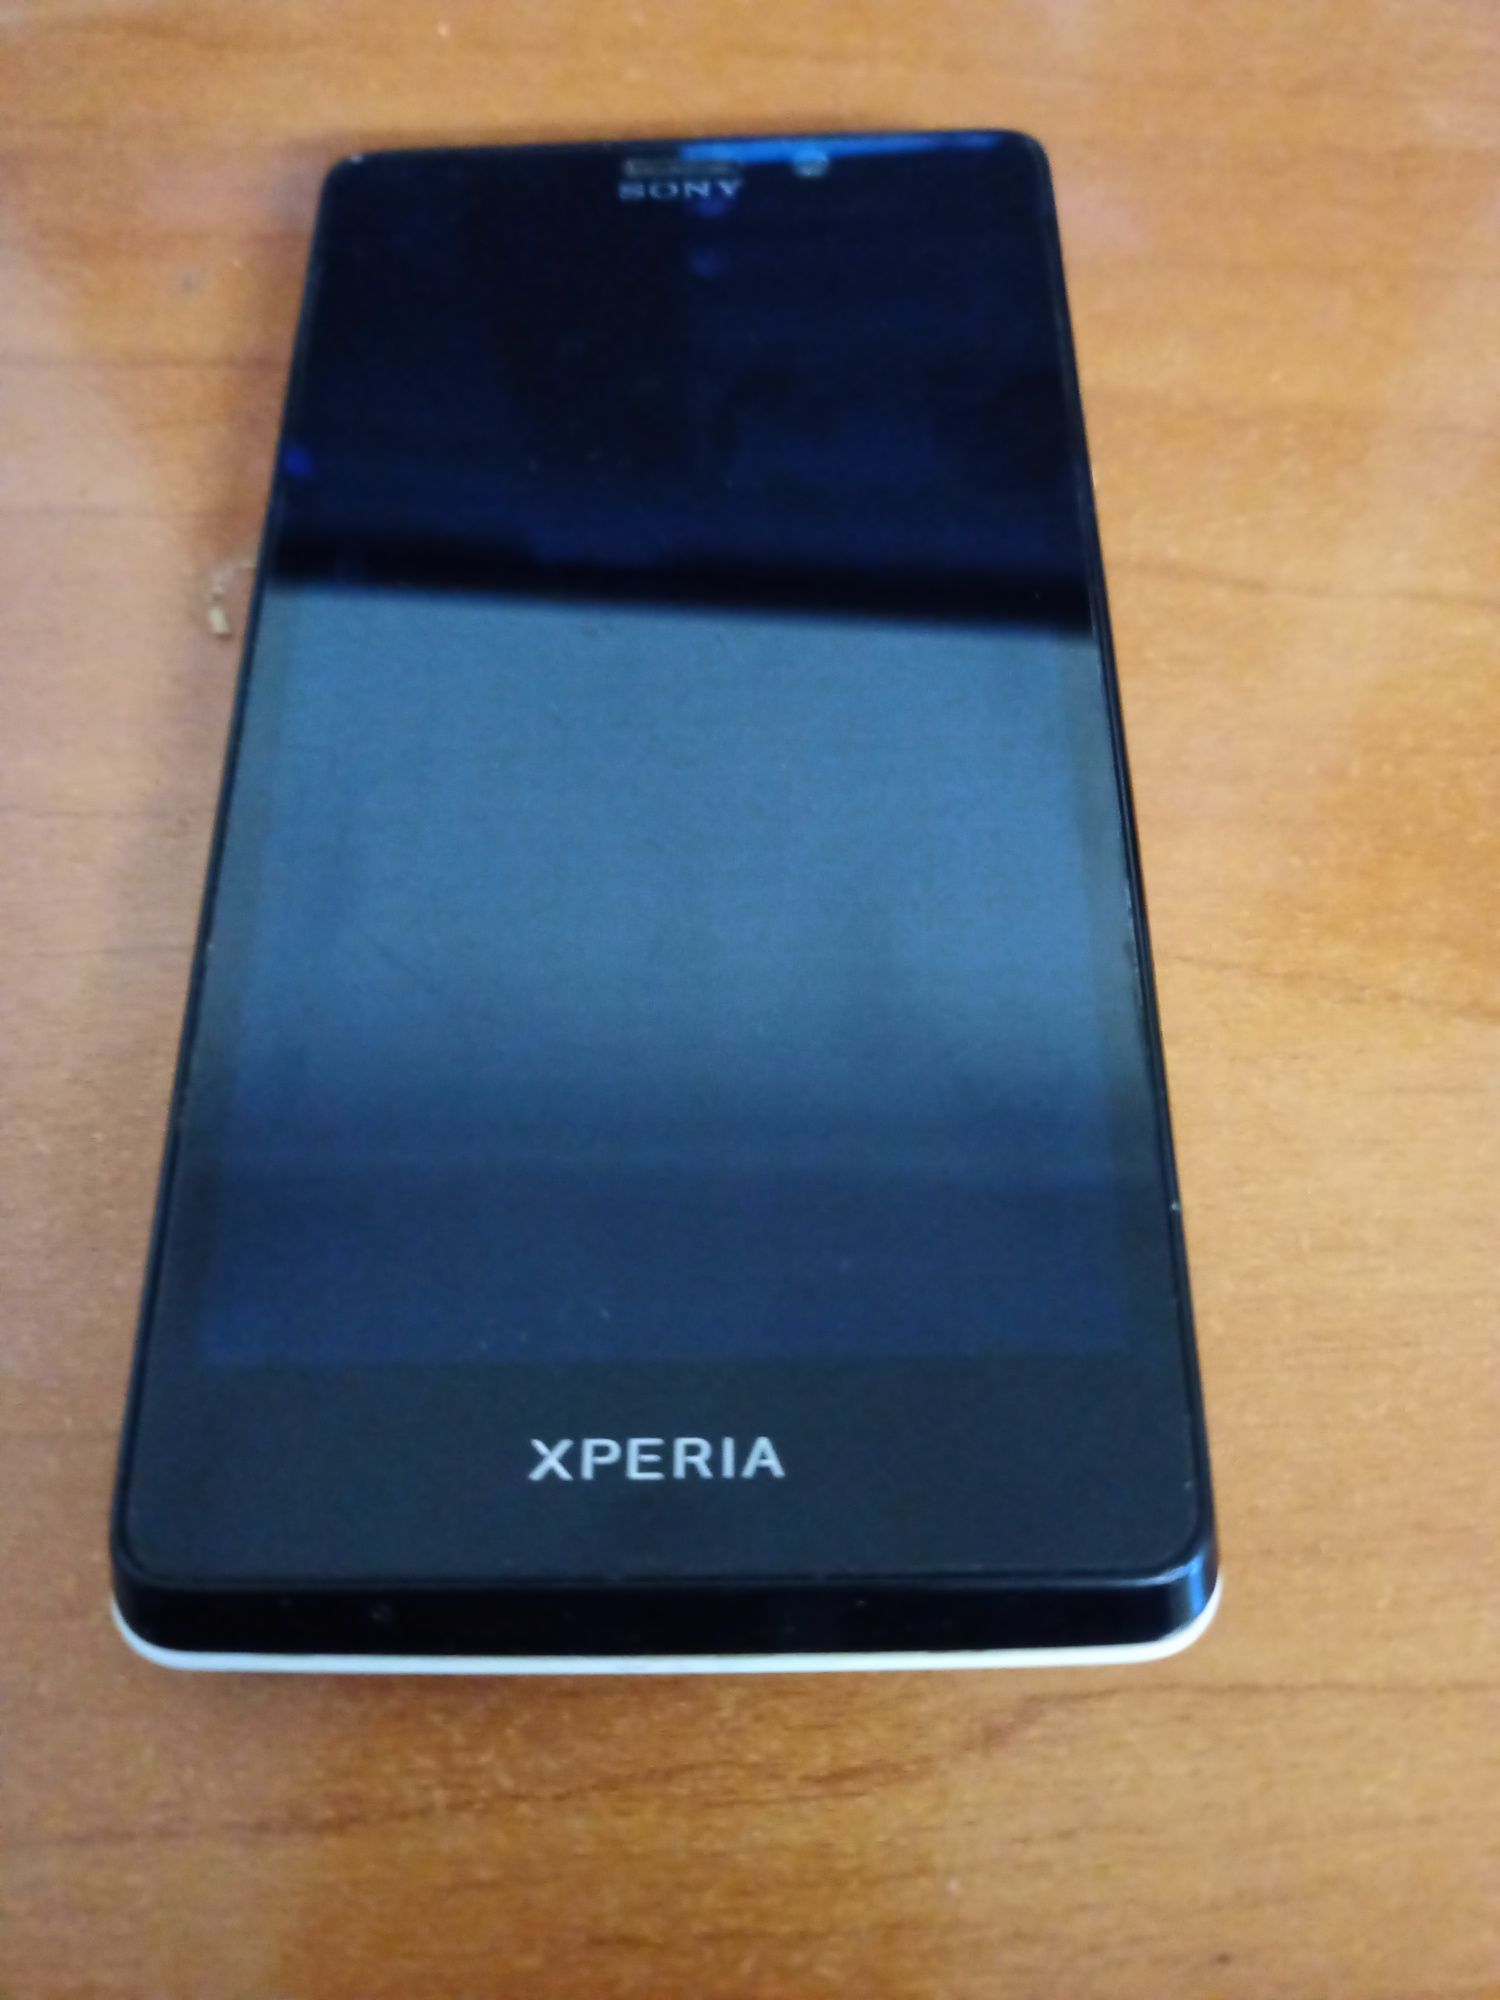 Sony Xperia T lt30